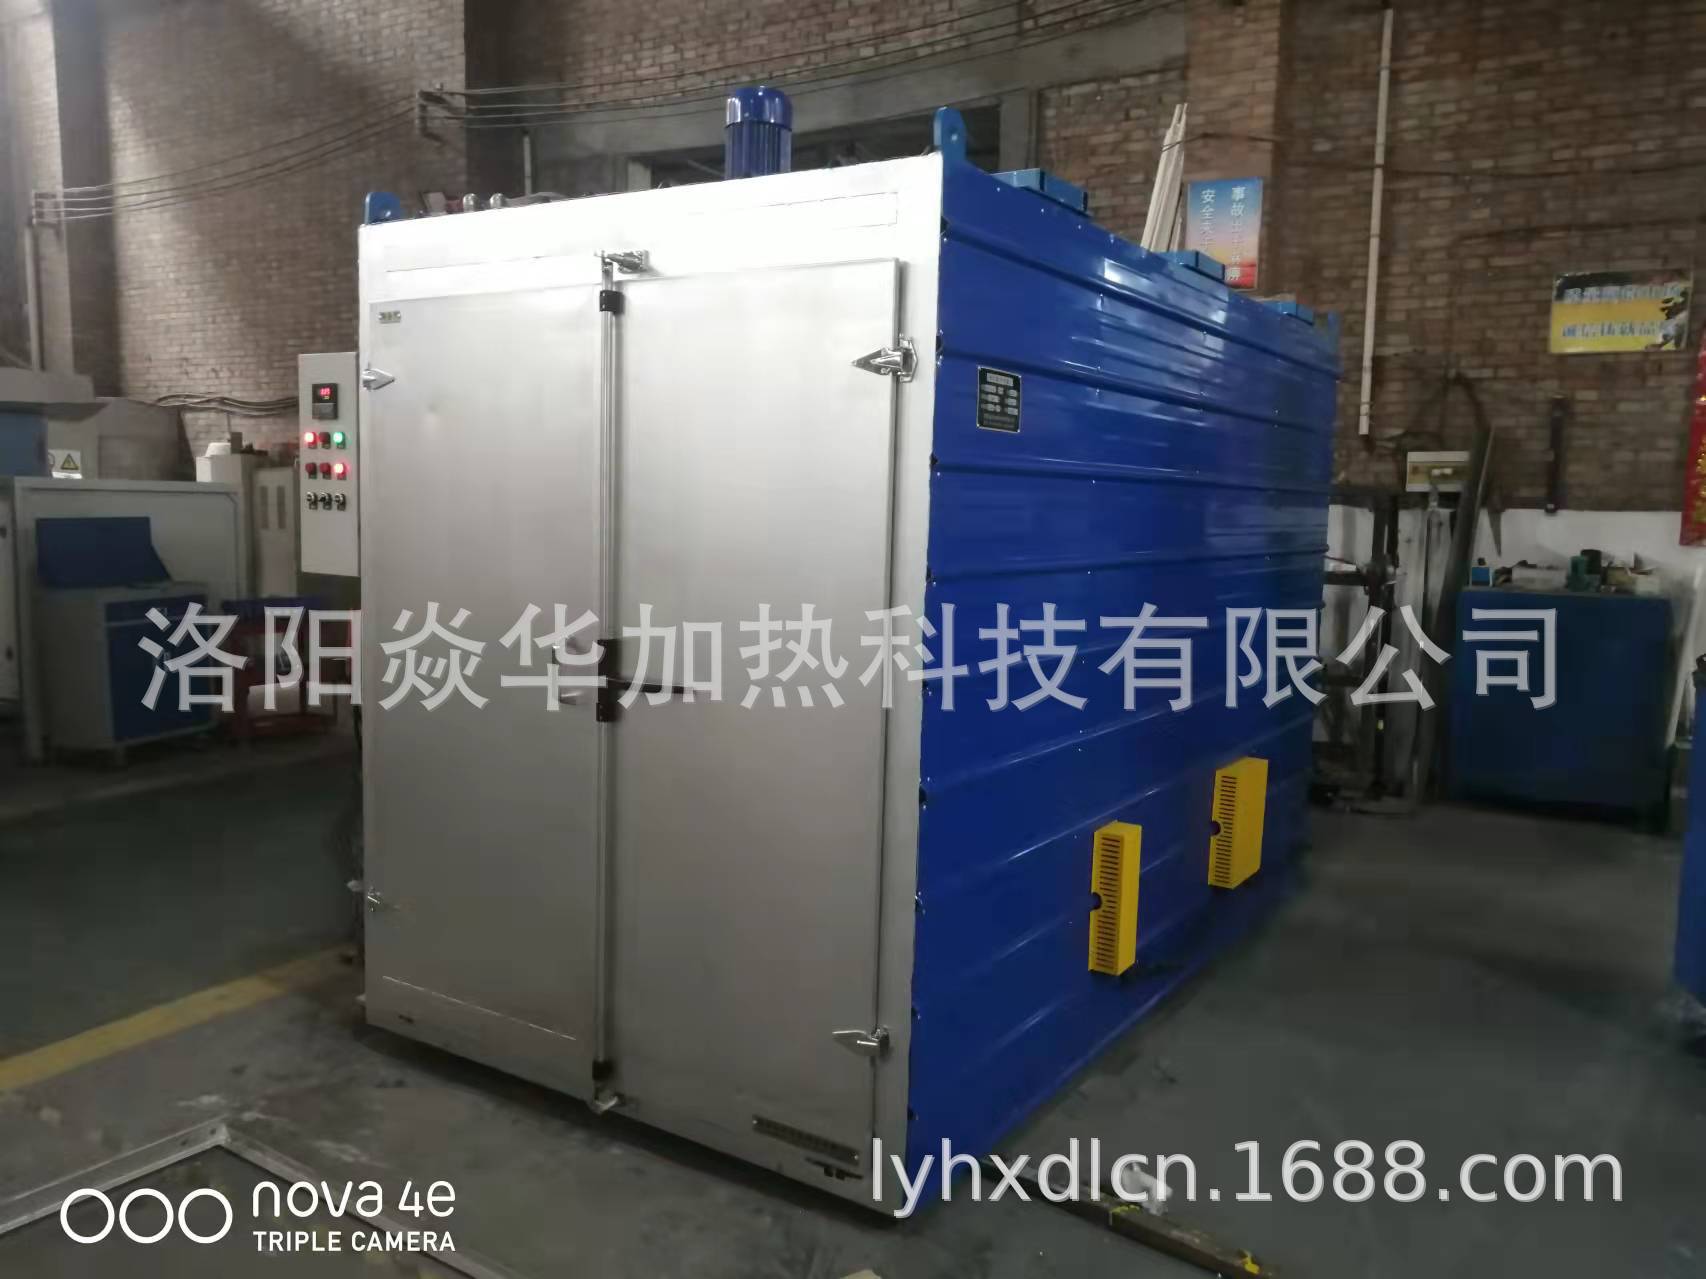 洛阳工业电炉厂家热风循环风箱实验电炉 烘箱厂家供应非标产品